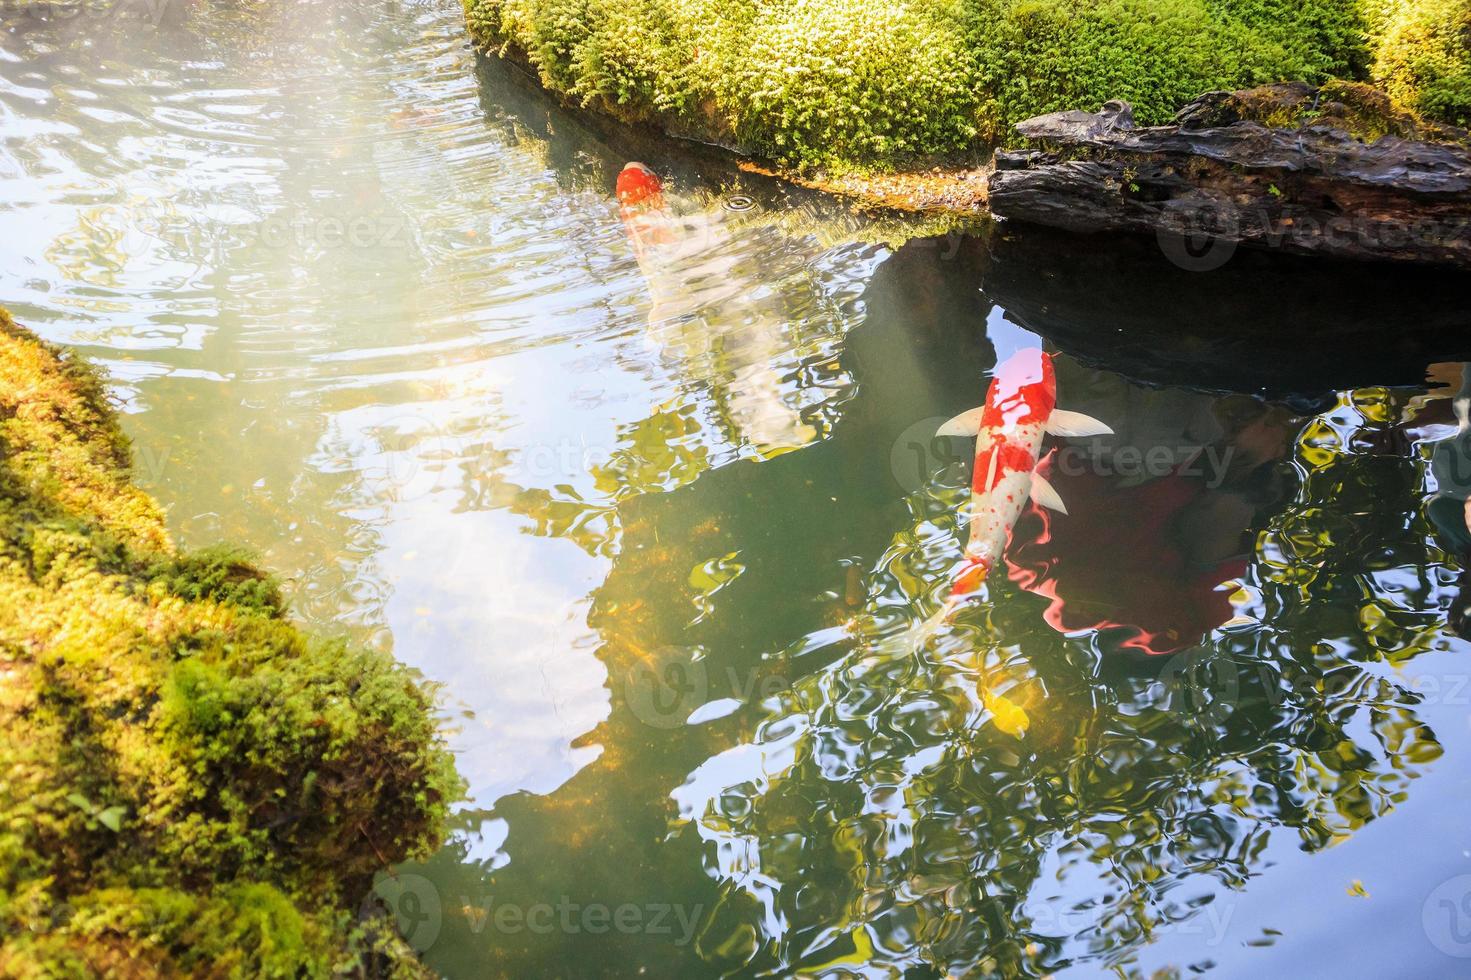 Carpes fantaisie colorées poissons koi dans un étang de jardin photo